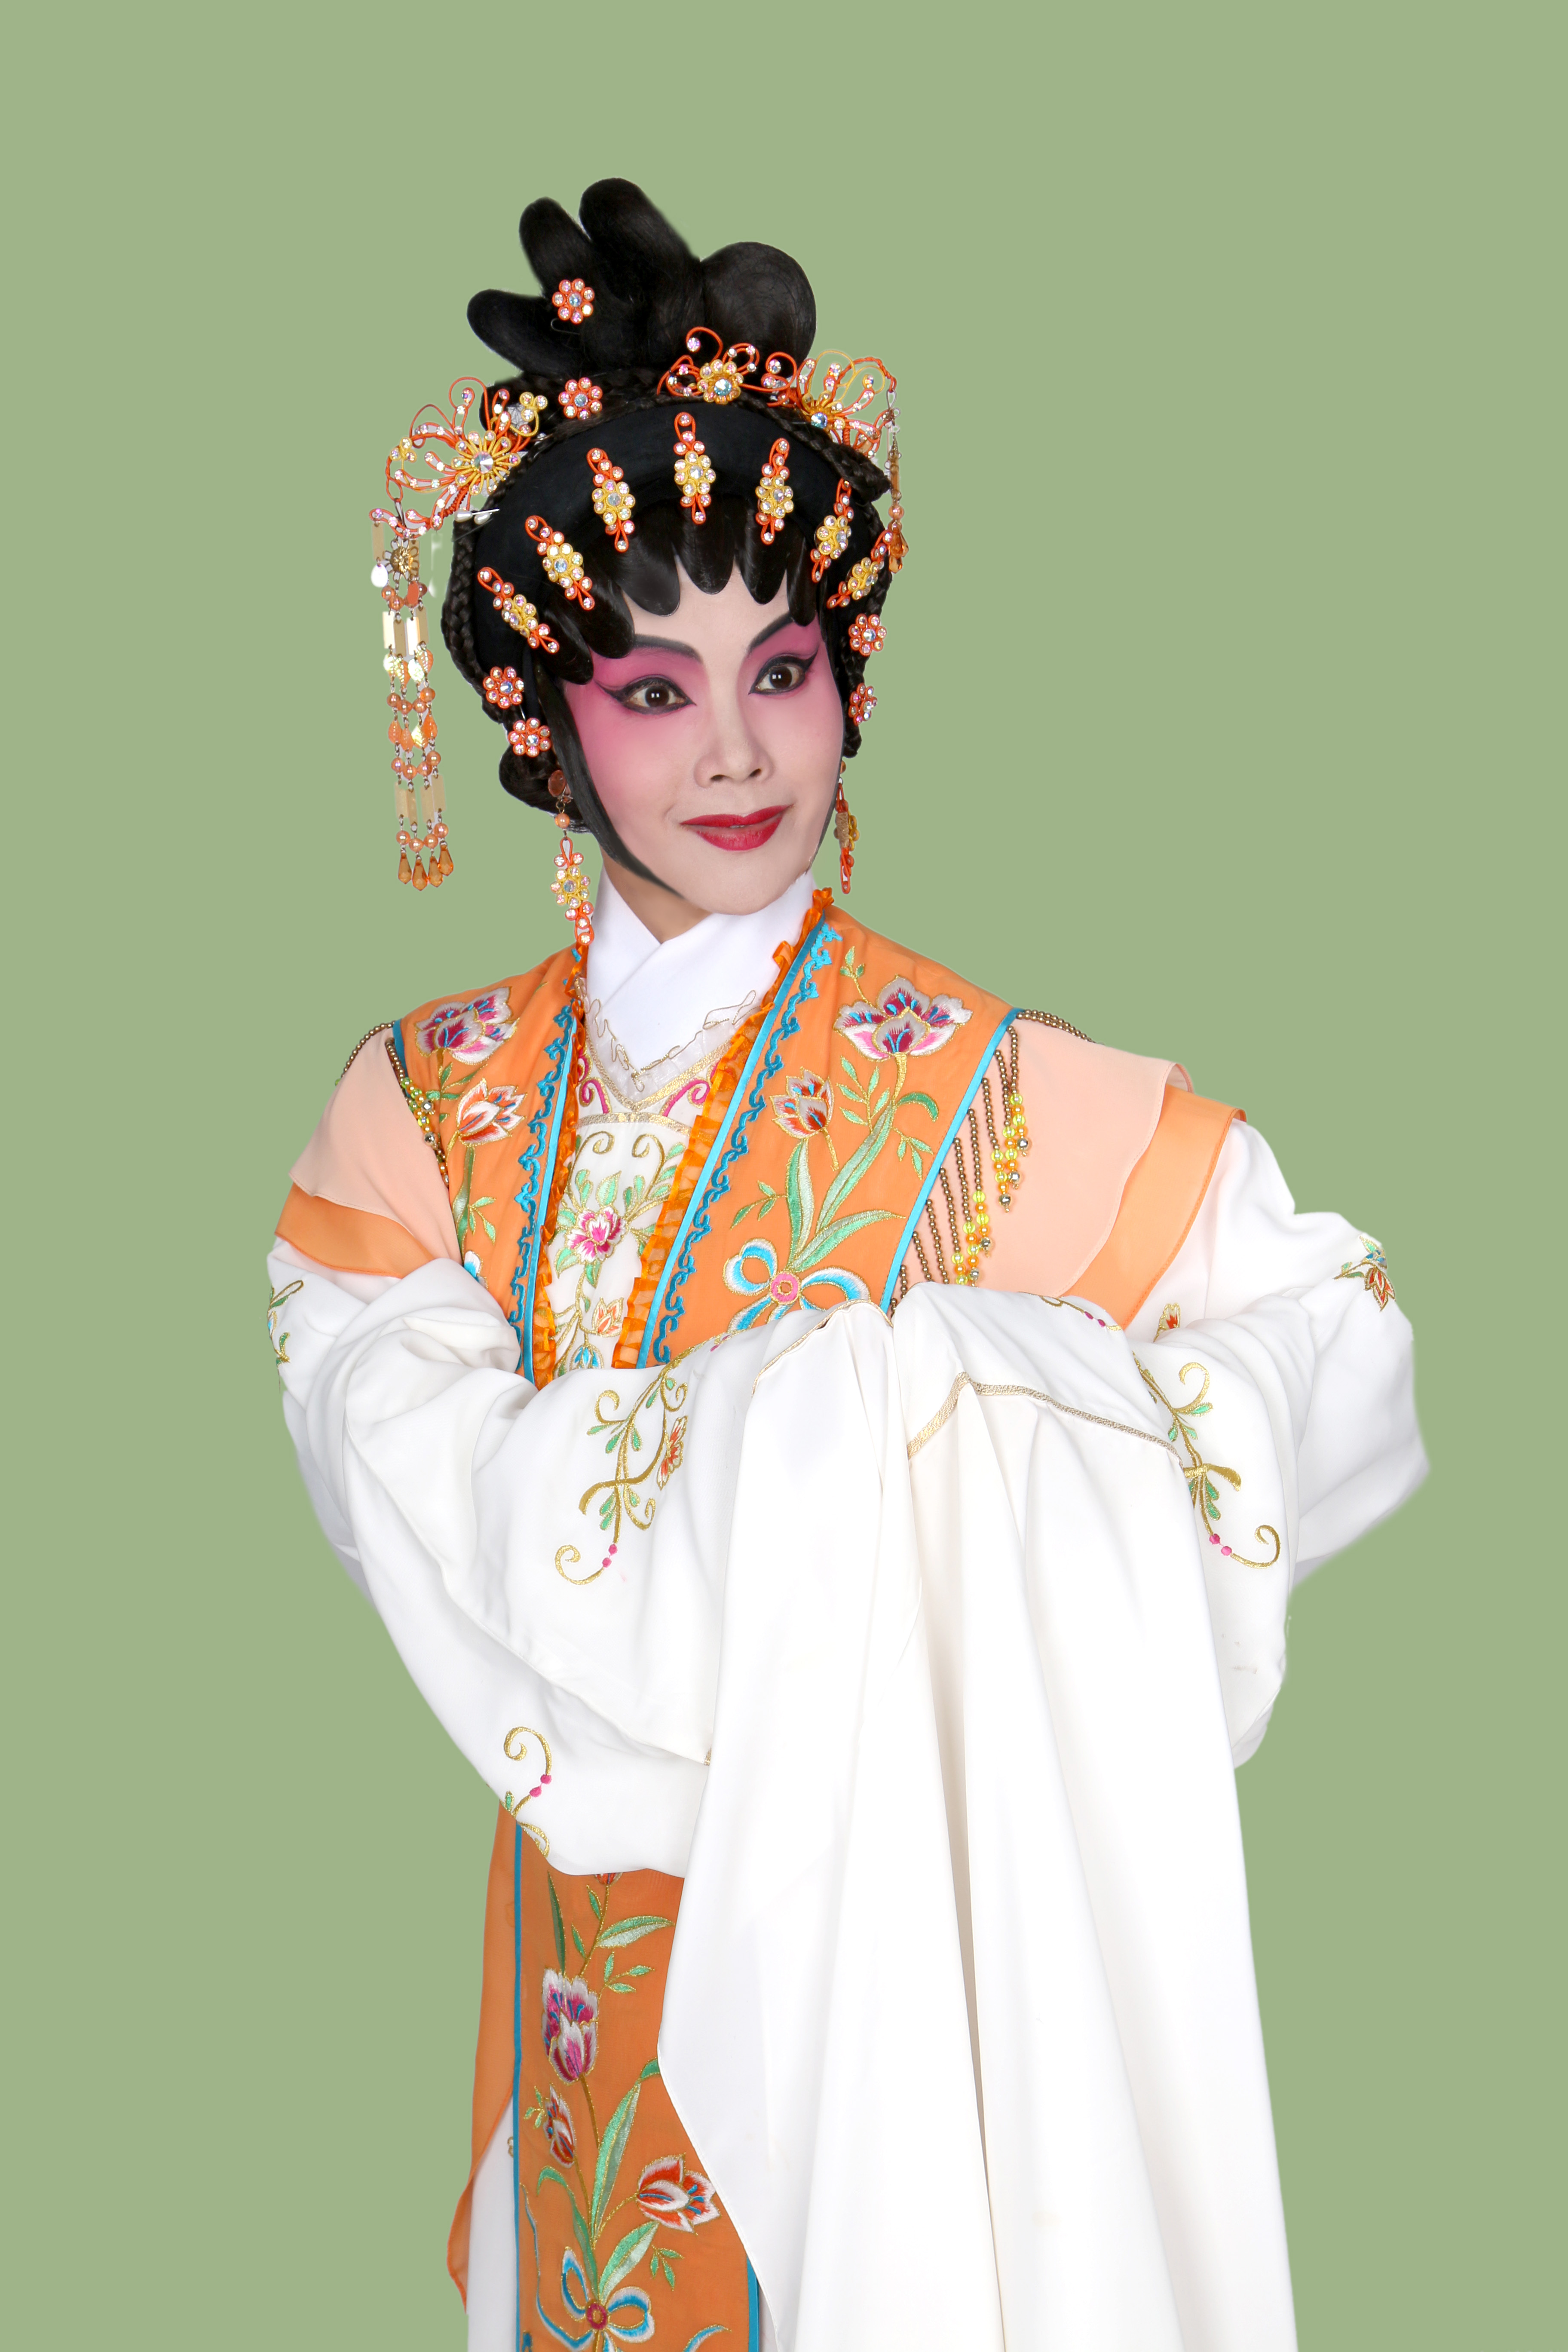 Man Shuet-kau as Chiang Shui-lin